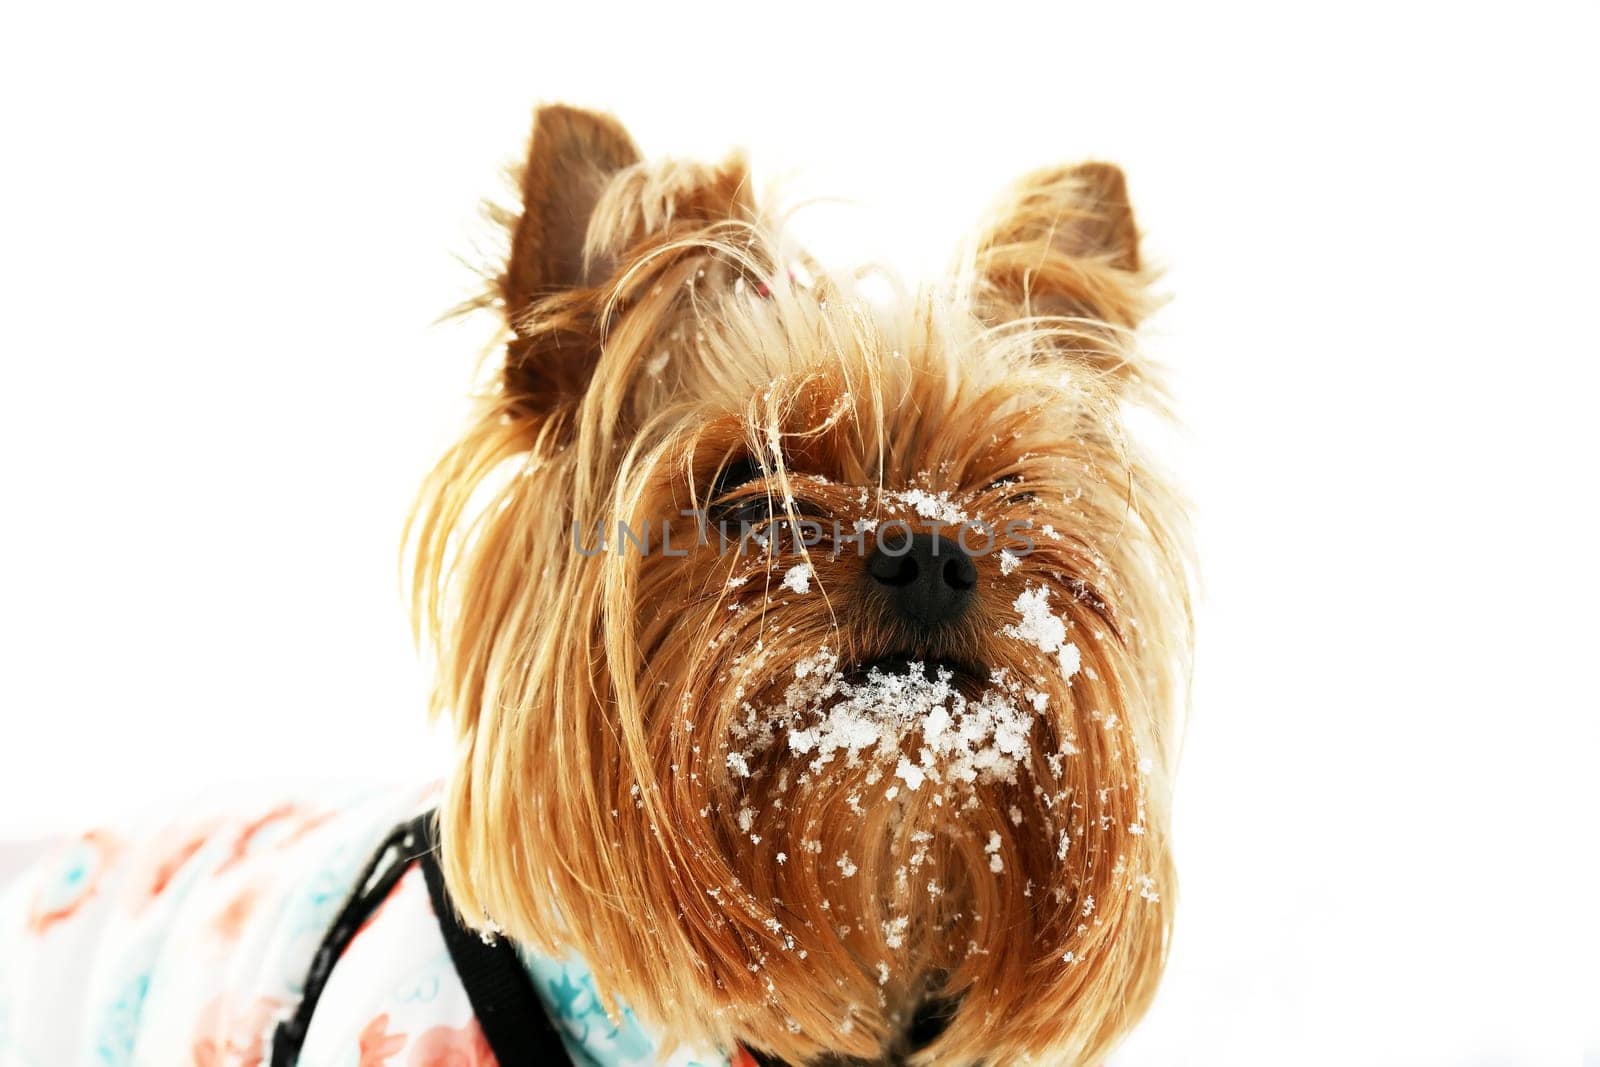 Dog In Snow by kvkirillov